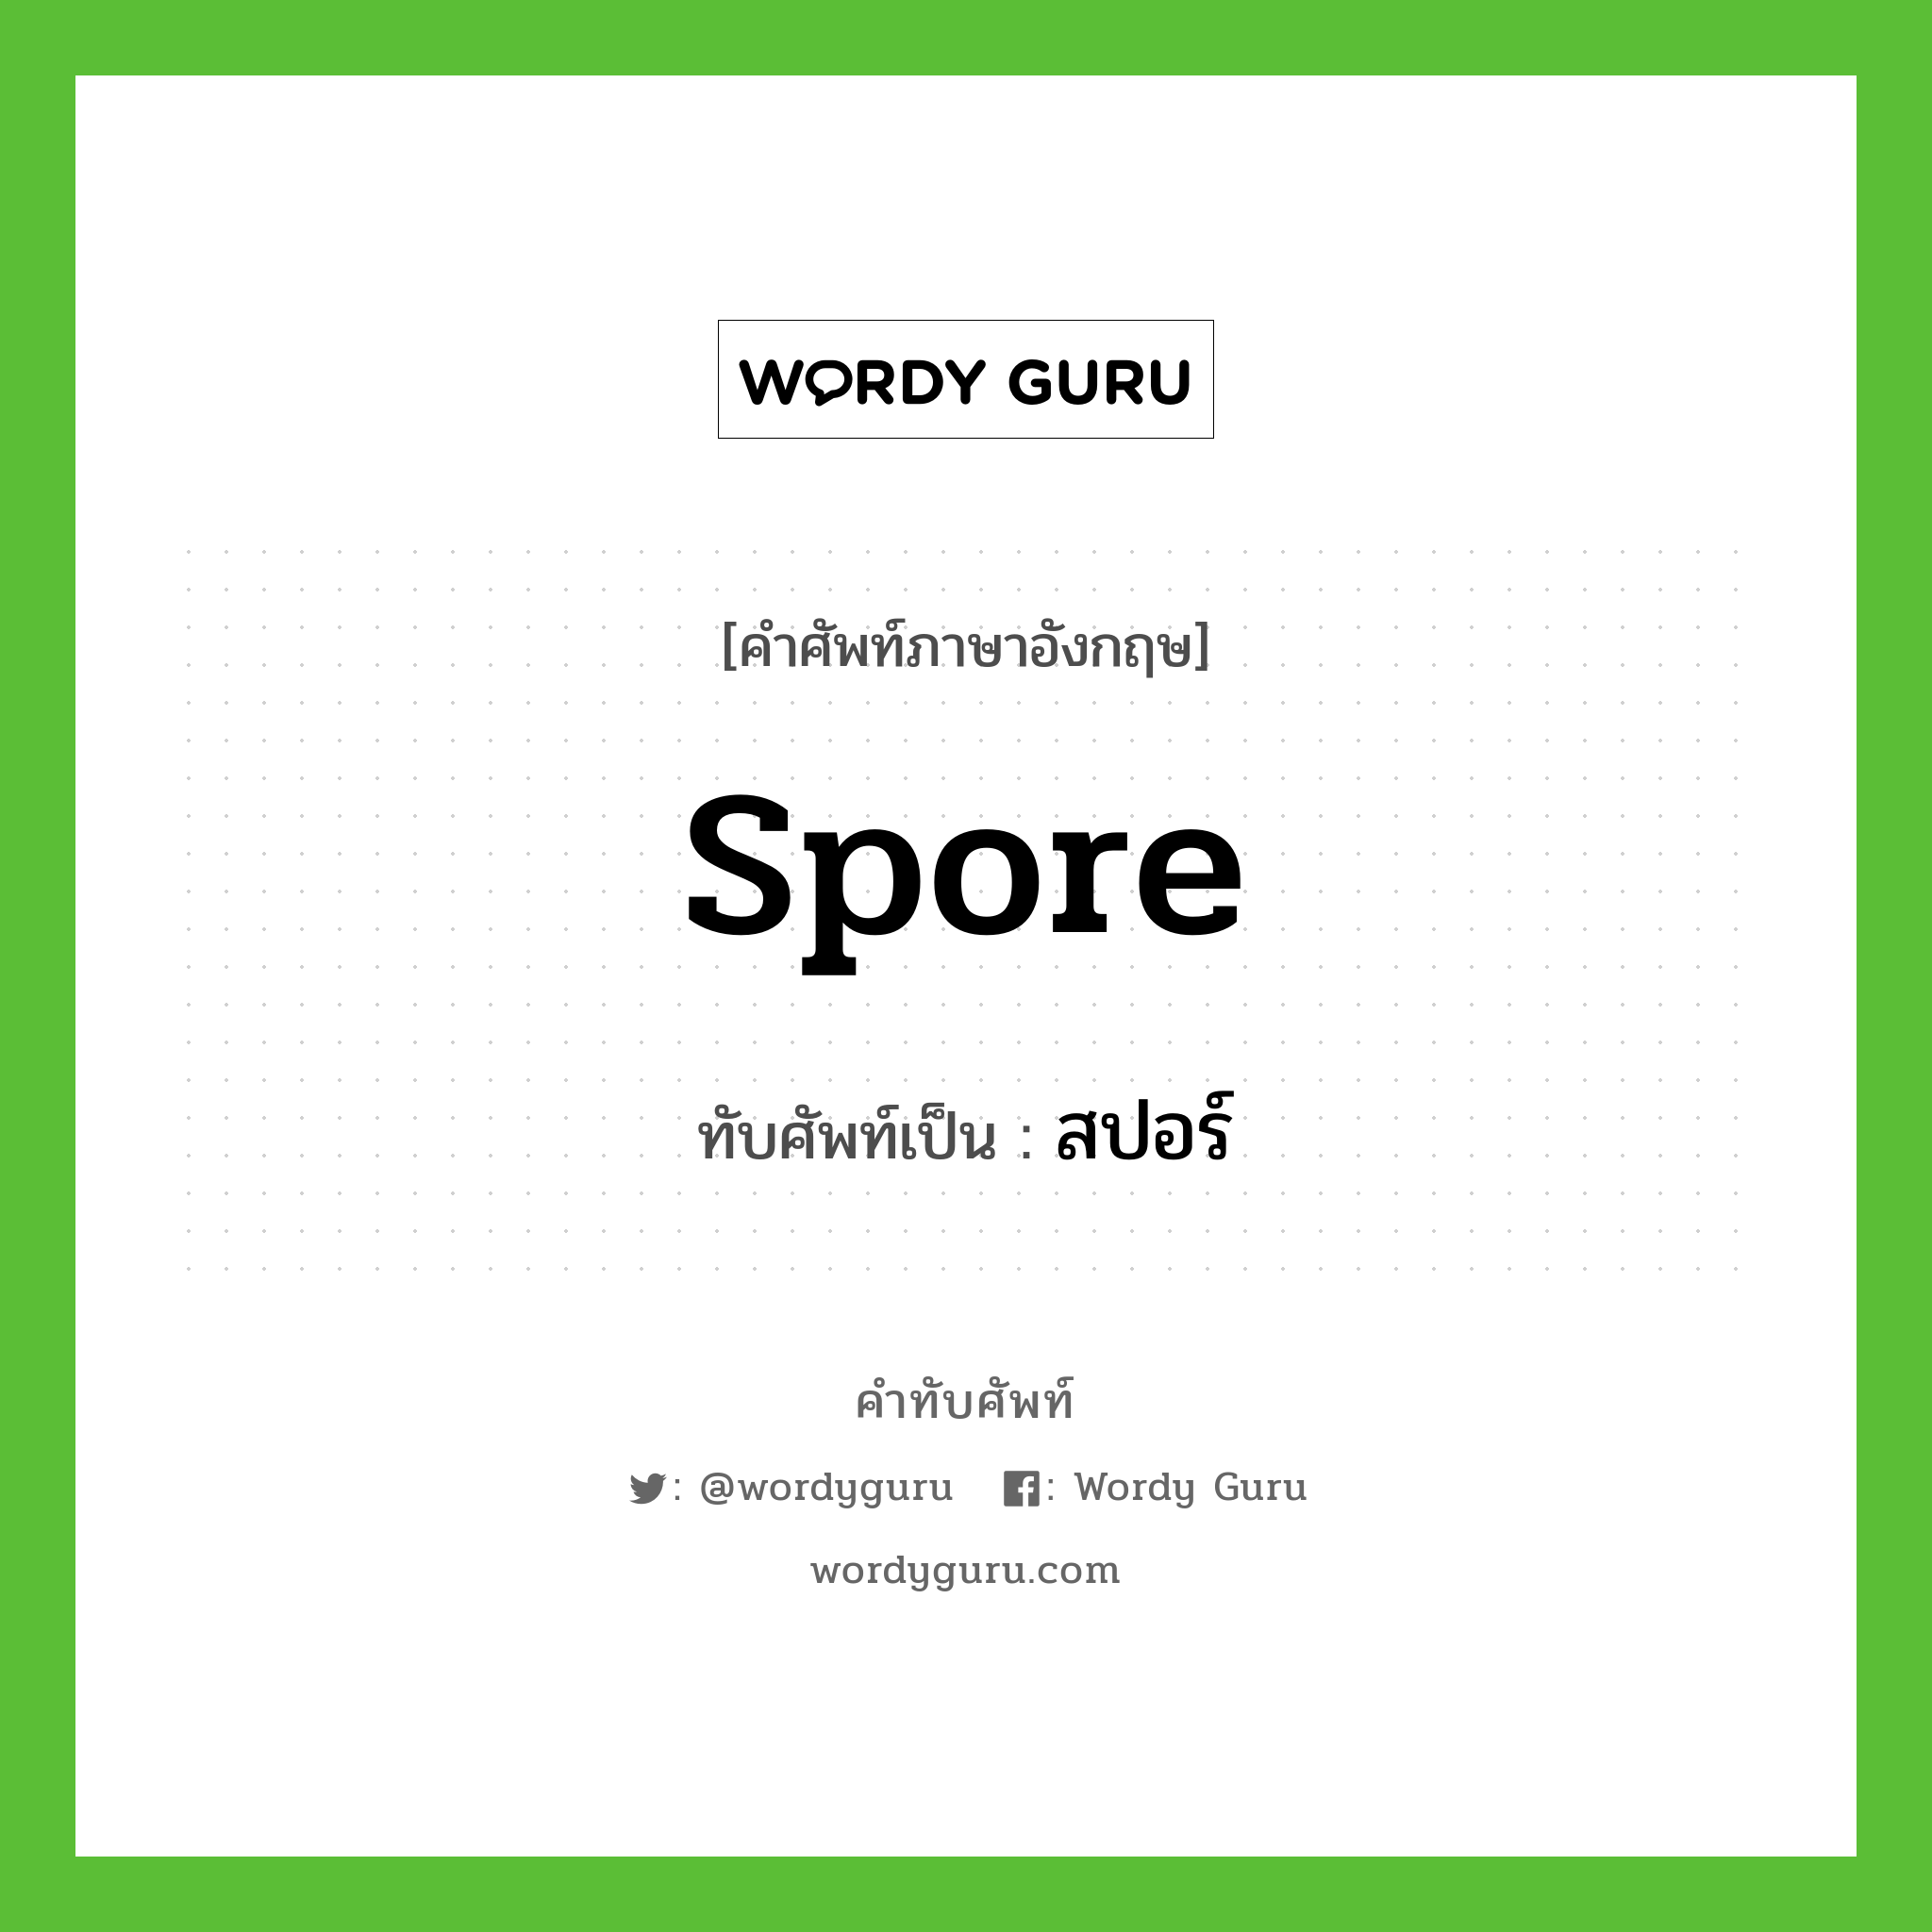 spore เขียนเป็นคำไทยว่าอะไร?, คำศัพท์ภาษาอังกฤษ spore ทับศัพท์เป็น สปอร์